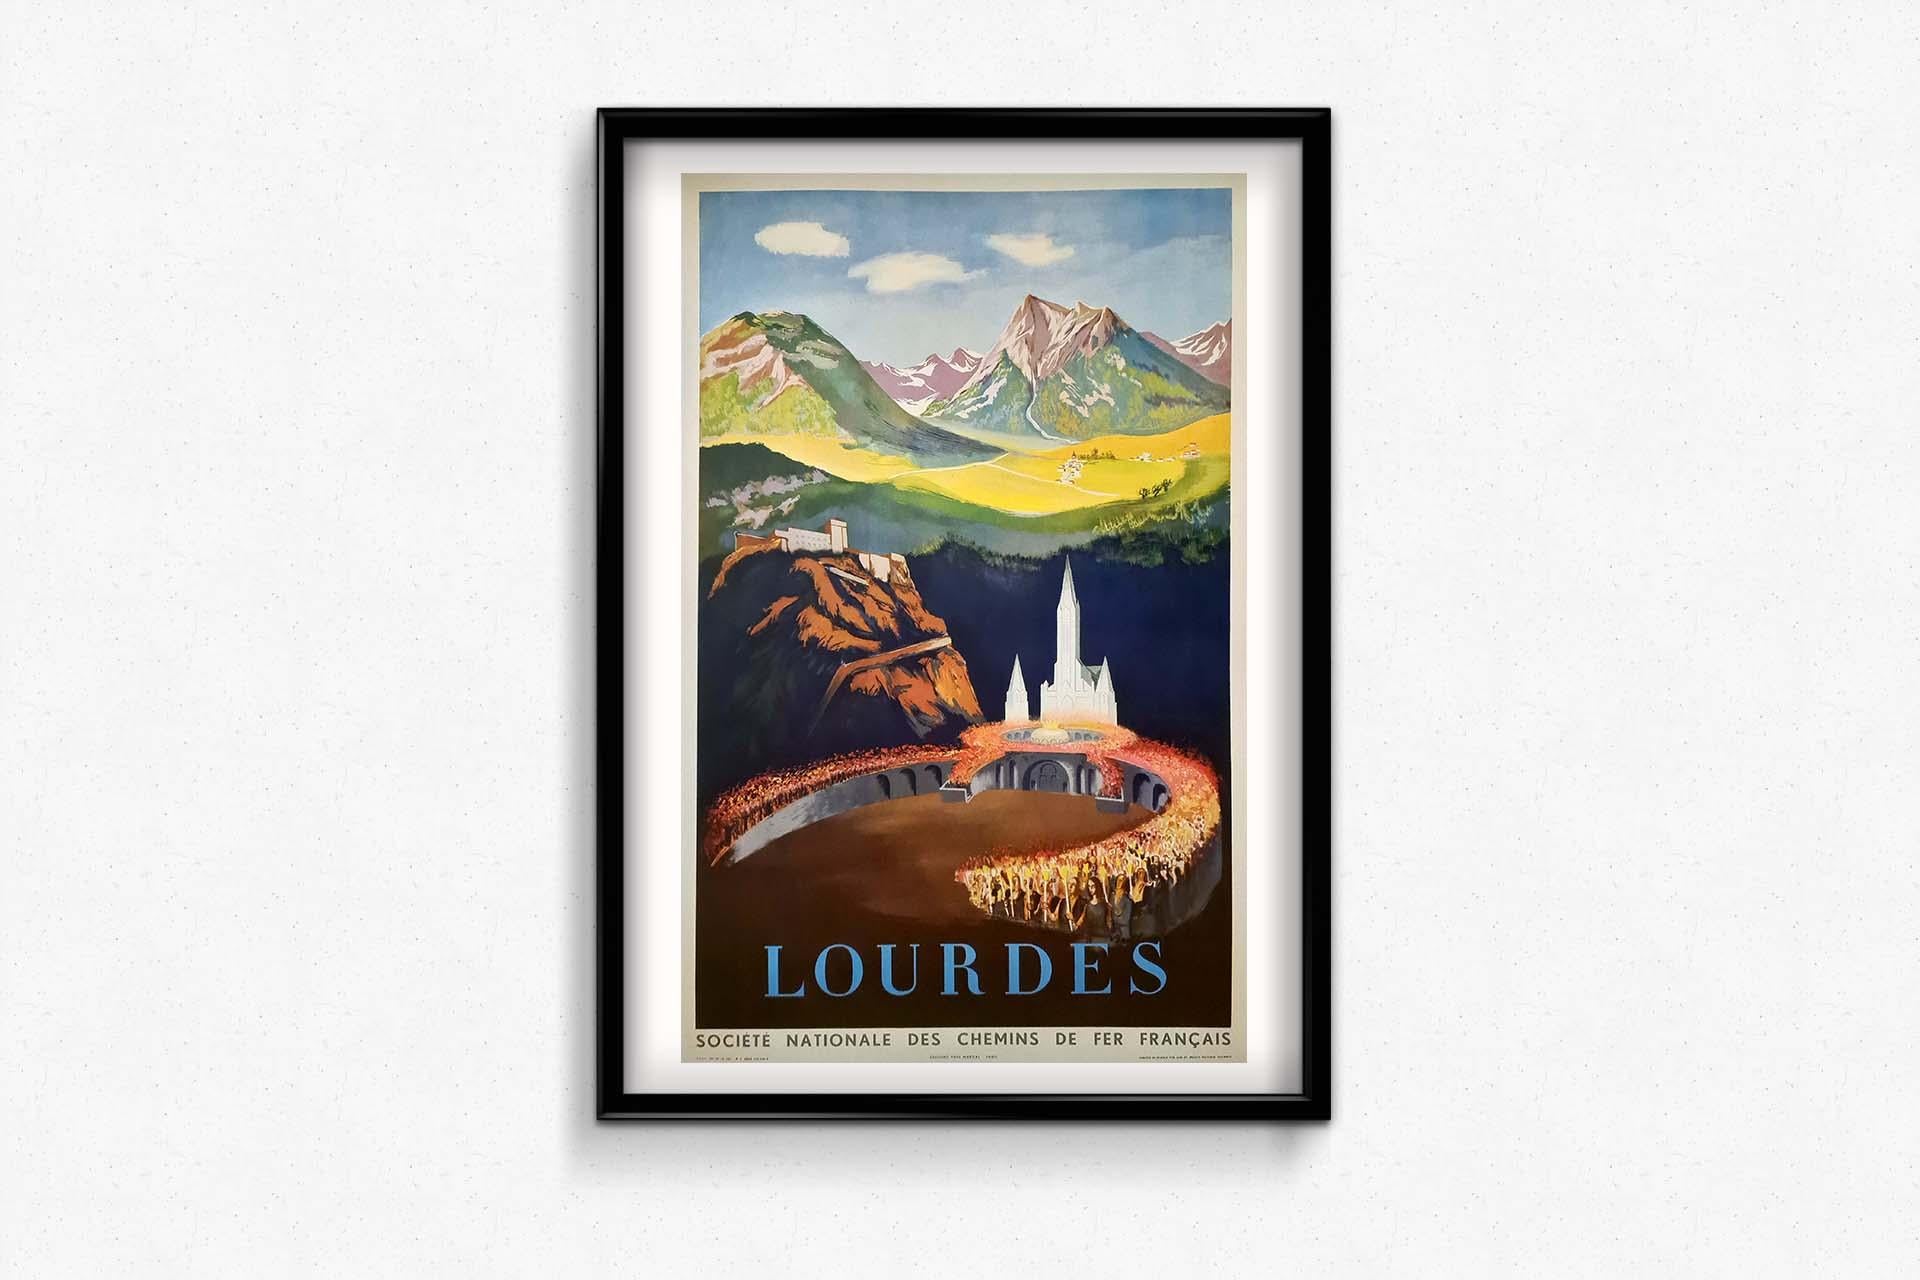 L'affiche de voyage originale de 1951 de Louis Berthomme Saint-André pour Lourdes, commandée par la Société nationale des chemins de fer français (SNCF), est un témoignage captivant de l'attrait de la célèbre destination de pèlerinage dans le